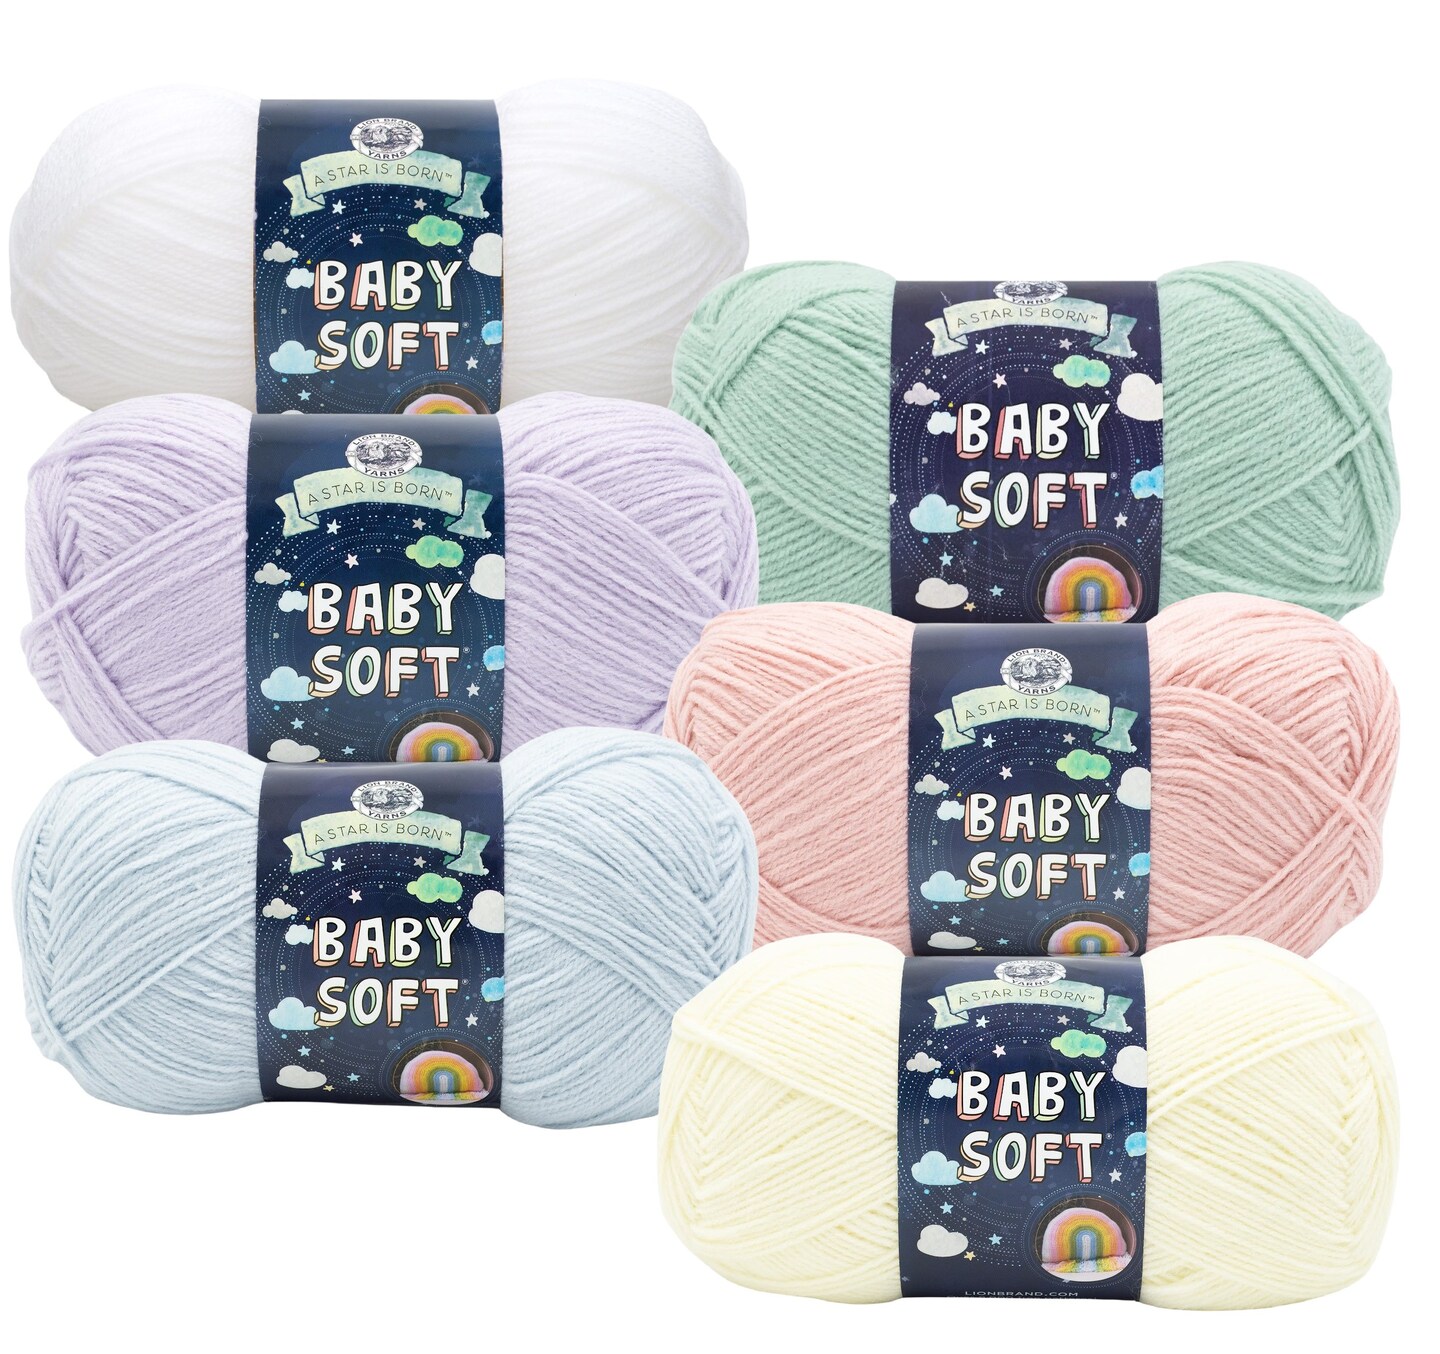 Lion Brand Yarn - Baby Soft - 6 Skein Assortment (Pastels)